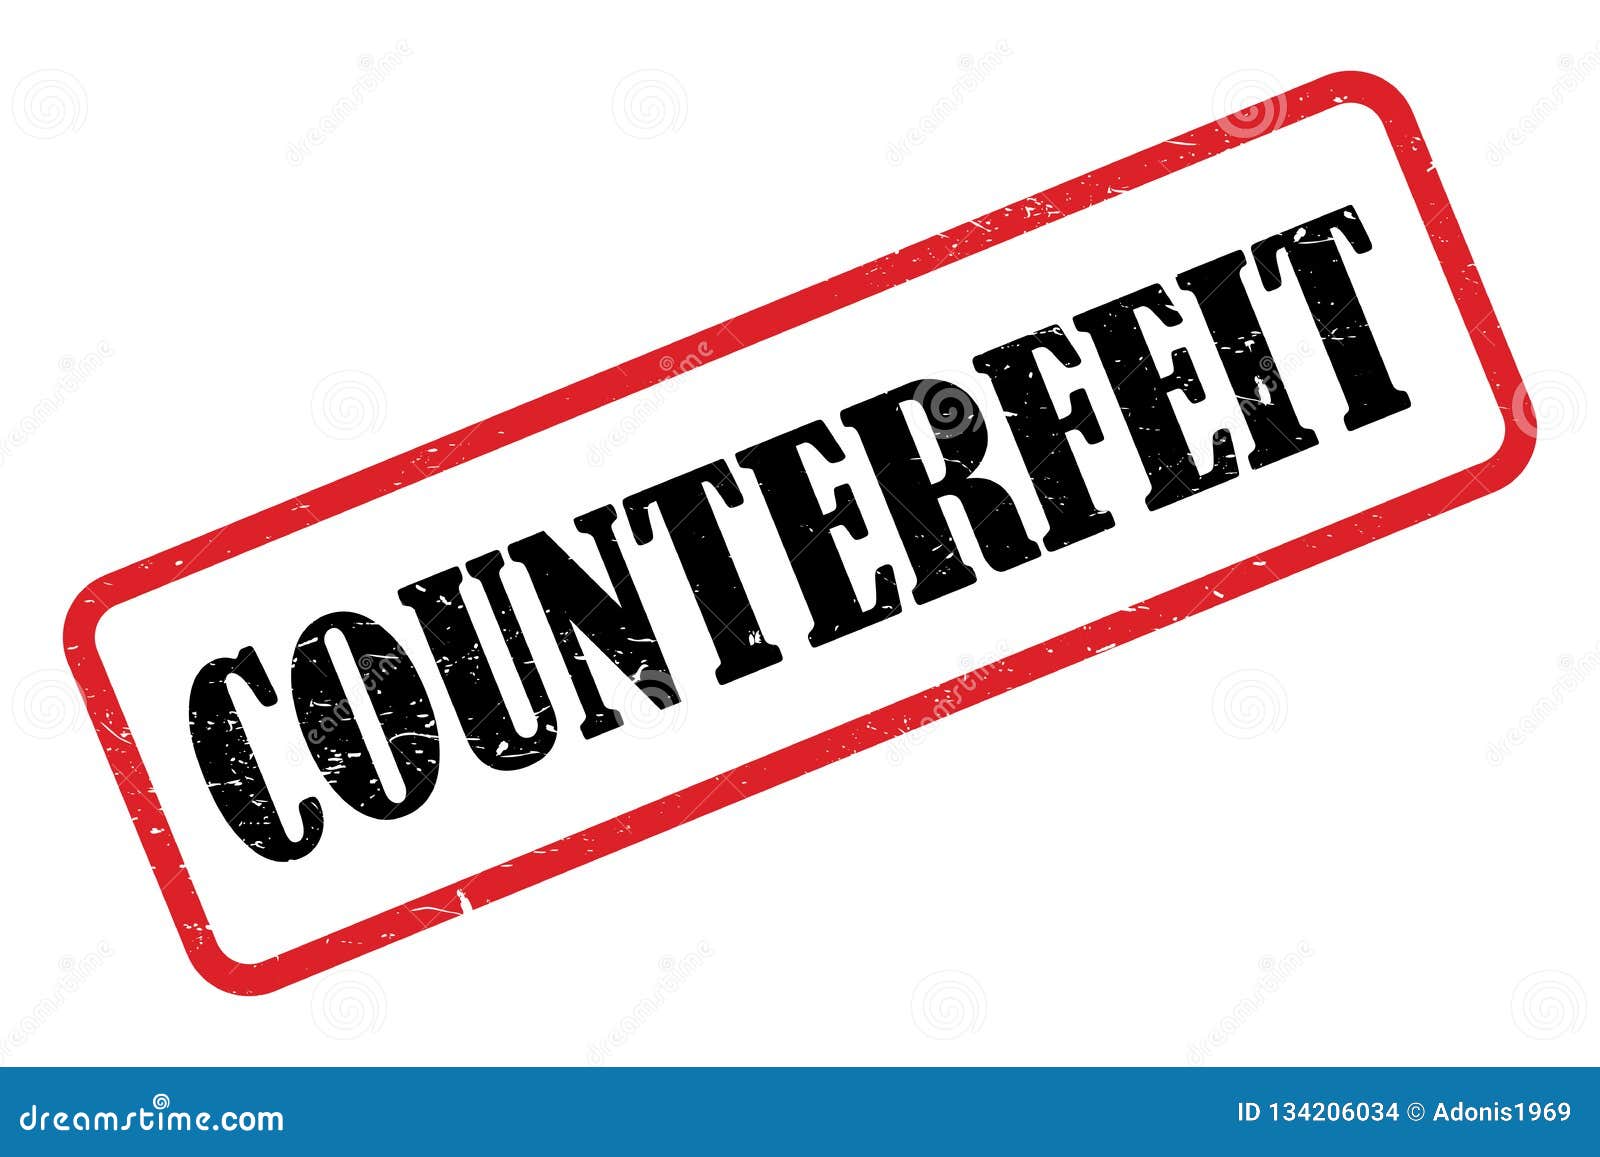 Dark Web Counterfeit Money